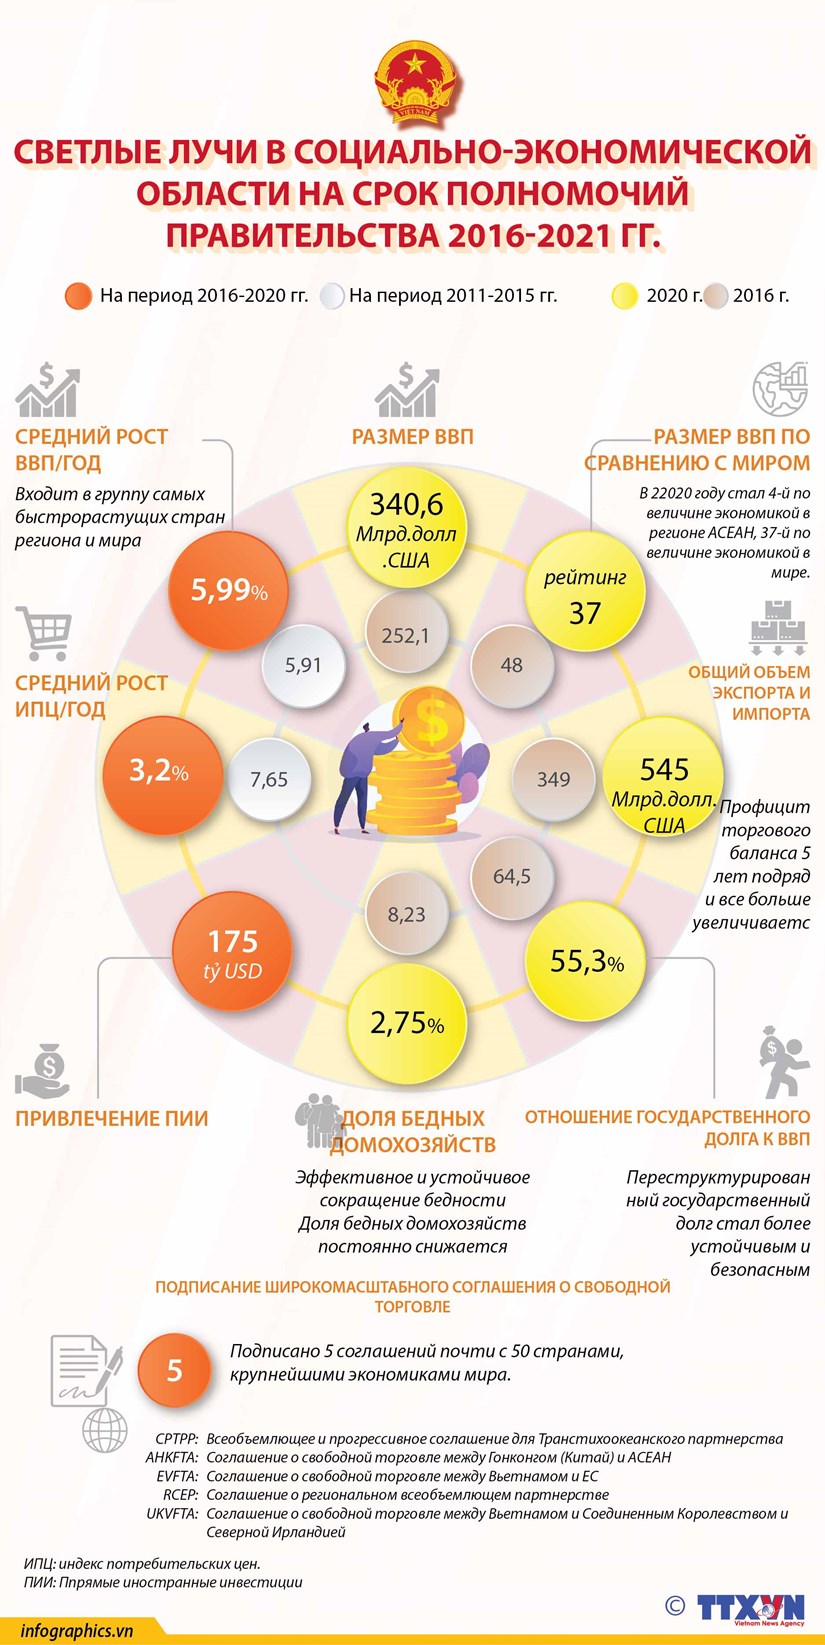 Социально-экономические показатели в период полномочии Правительства 2016-2021 гг. hinh anh 1